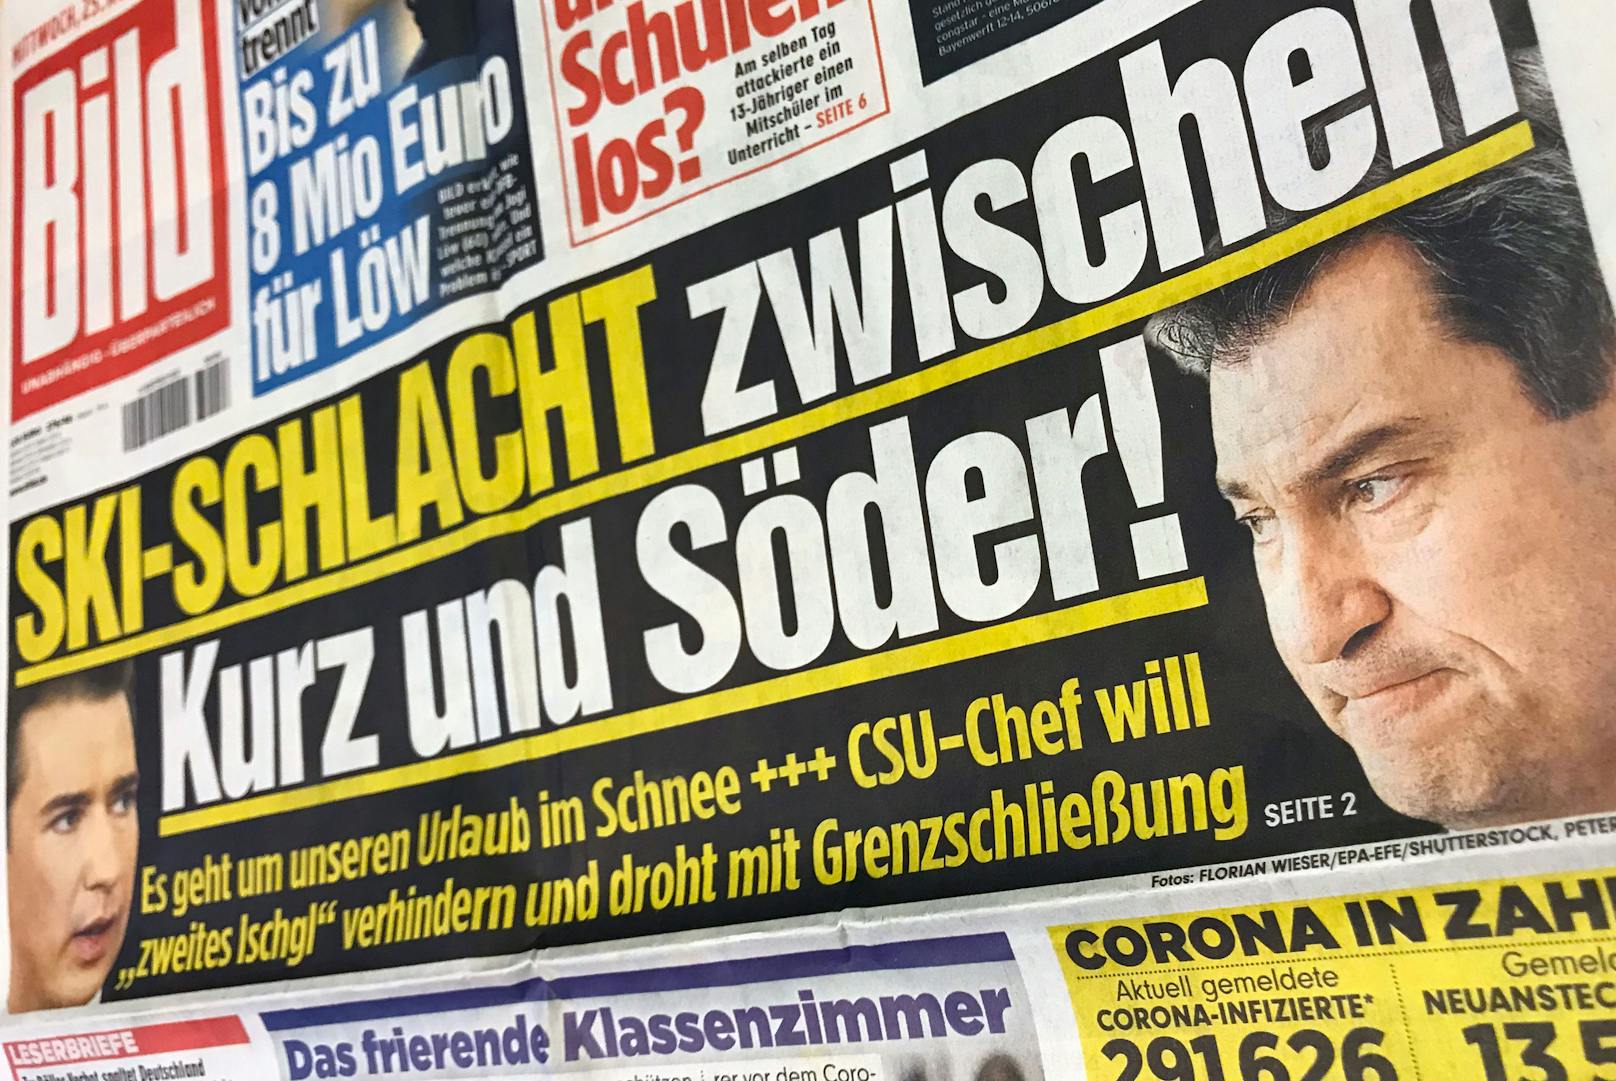 "Ski-Schlacht zwischen Kurz und Söder", titelt die deutsche "Bild".